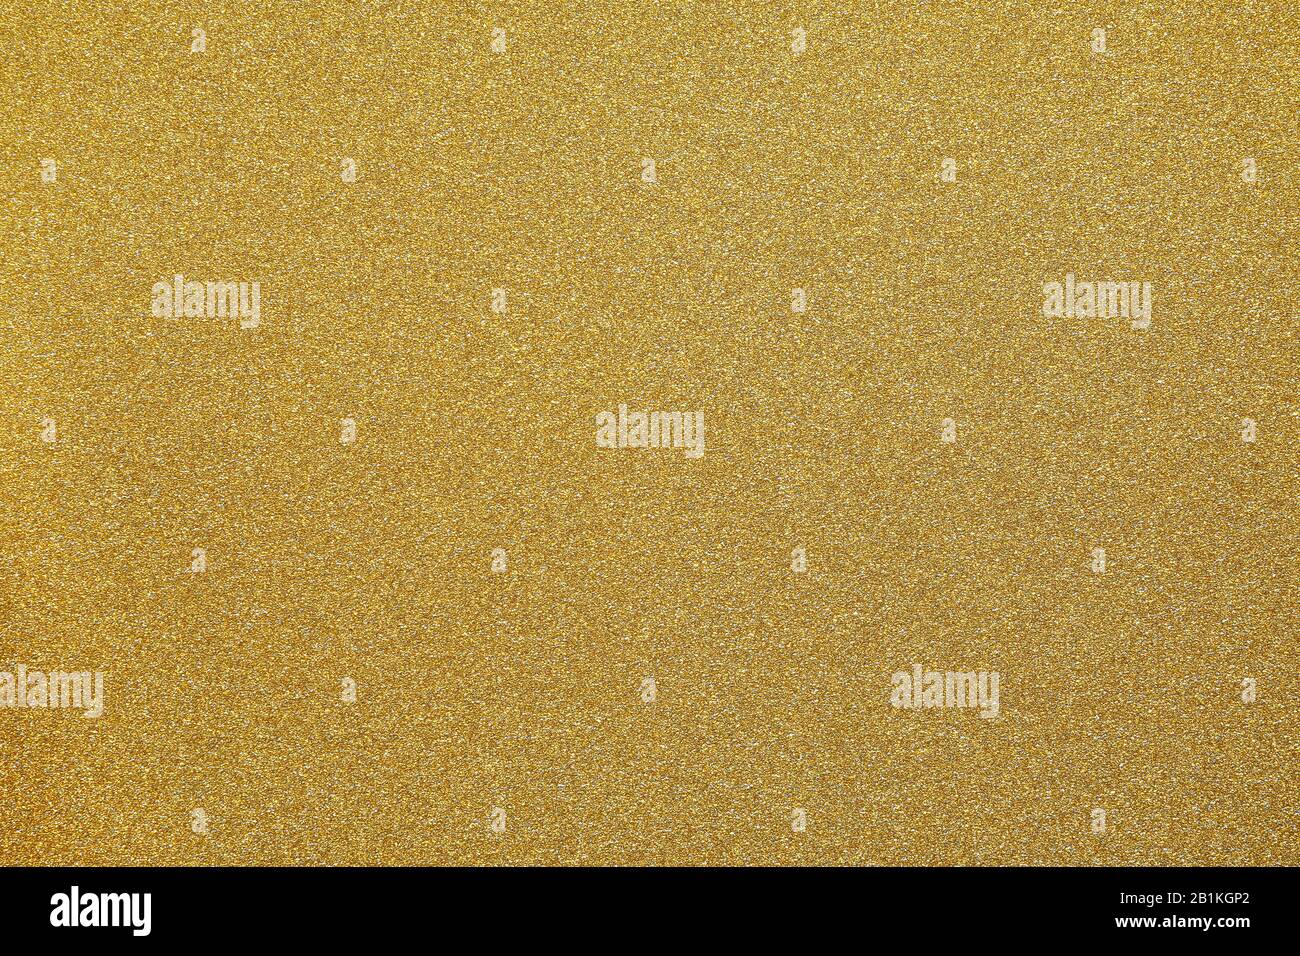 Goldener Glitter Texturhintergrund - goldenes strukturiertes Muster Stockfoto